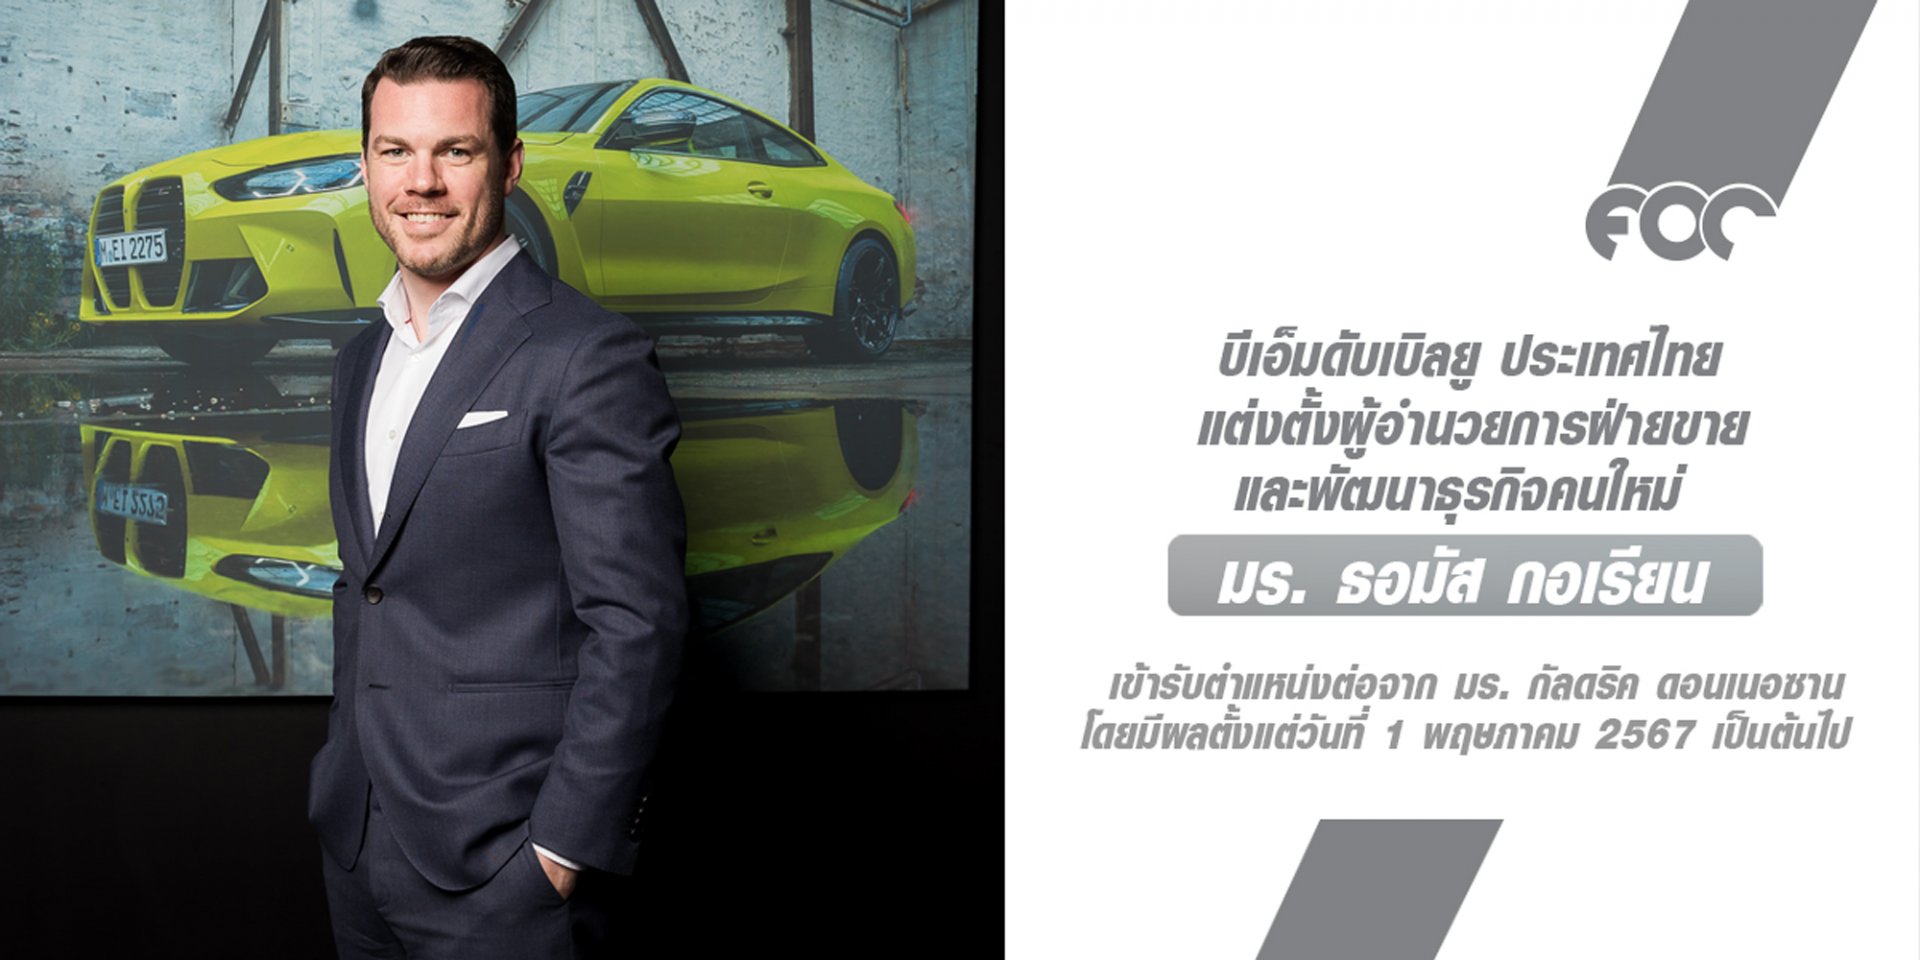 บีเอ็มดับเบิลยู ประเทศไทย แต่งตั้ง มร. ธอมัส กอเรียน ผู้อำนวยการฝ่ายขายและพัฒนาธุรกิจคนใหม่